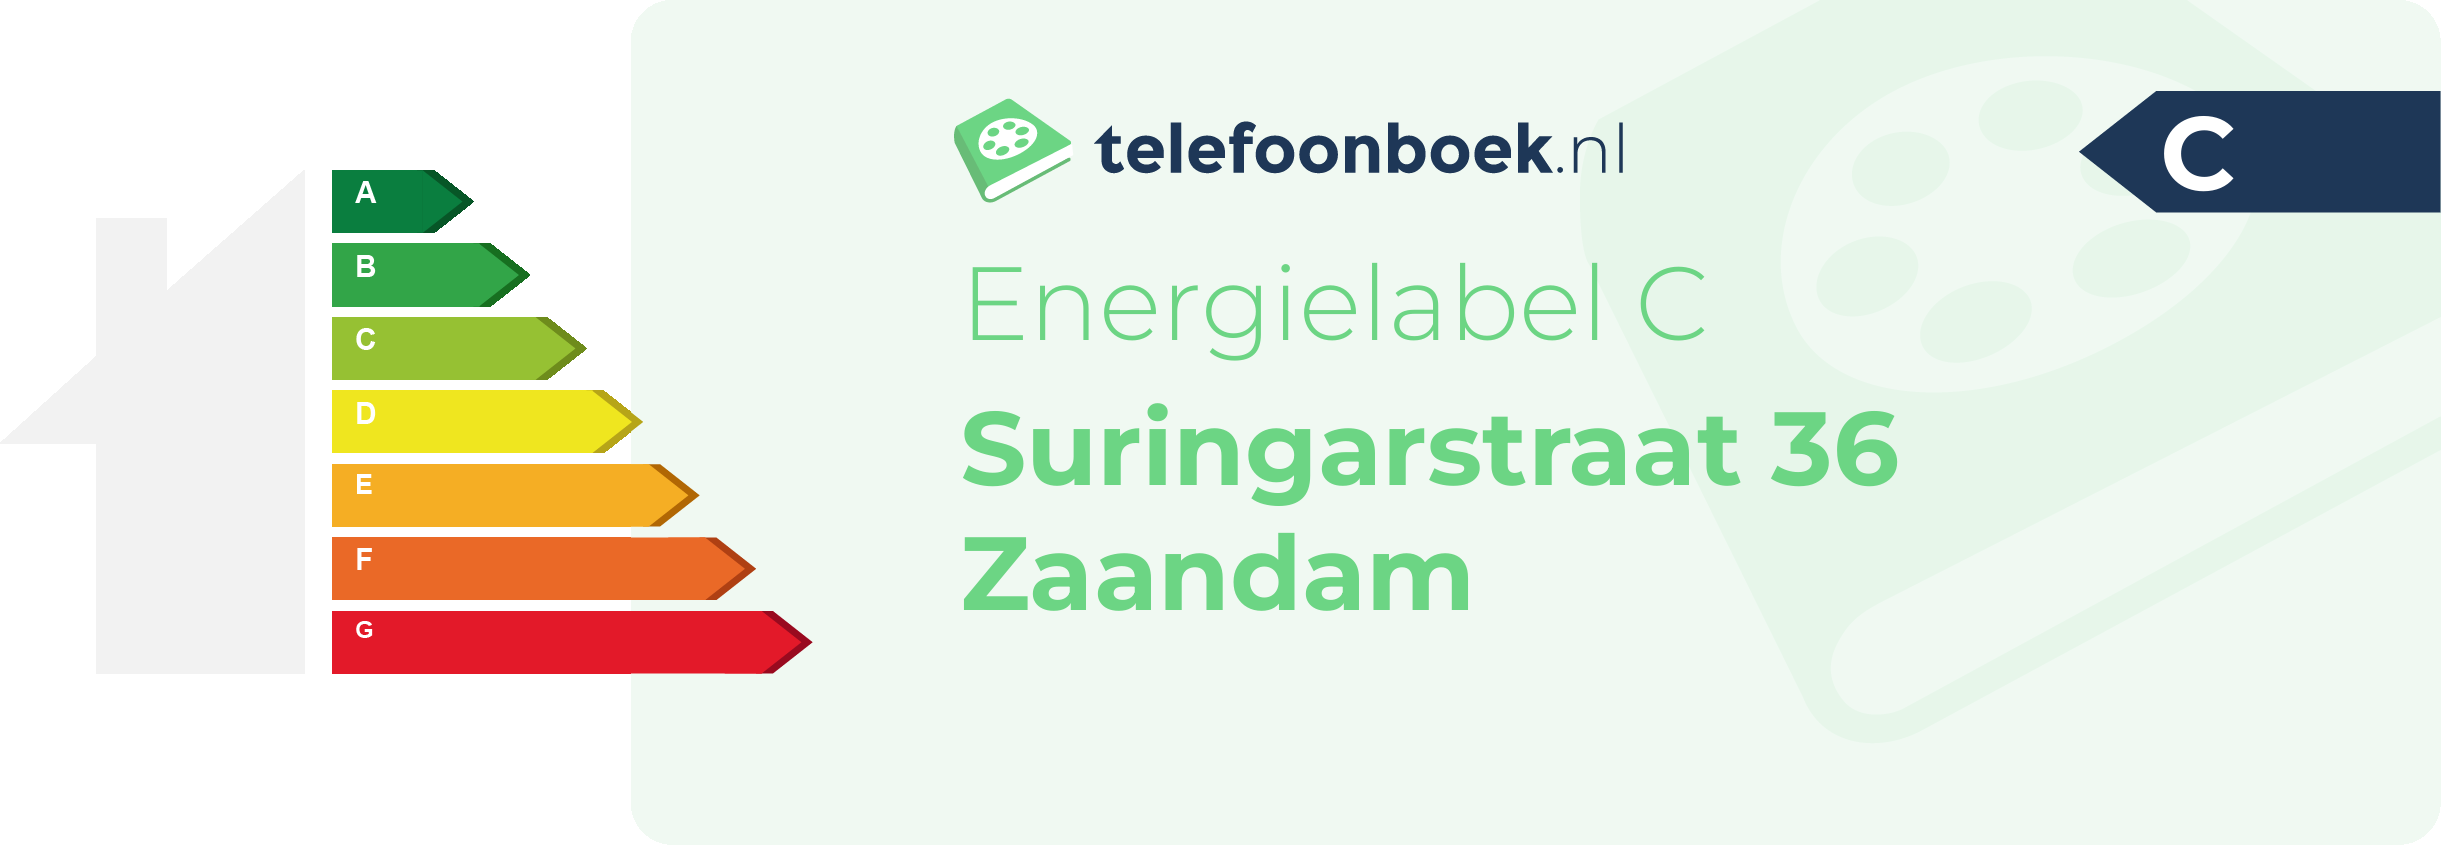 Energielabel Suringarstraat 36 Zaandam